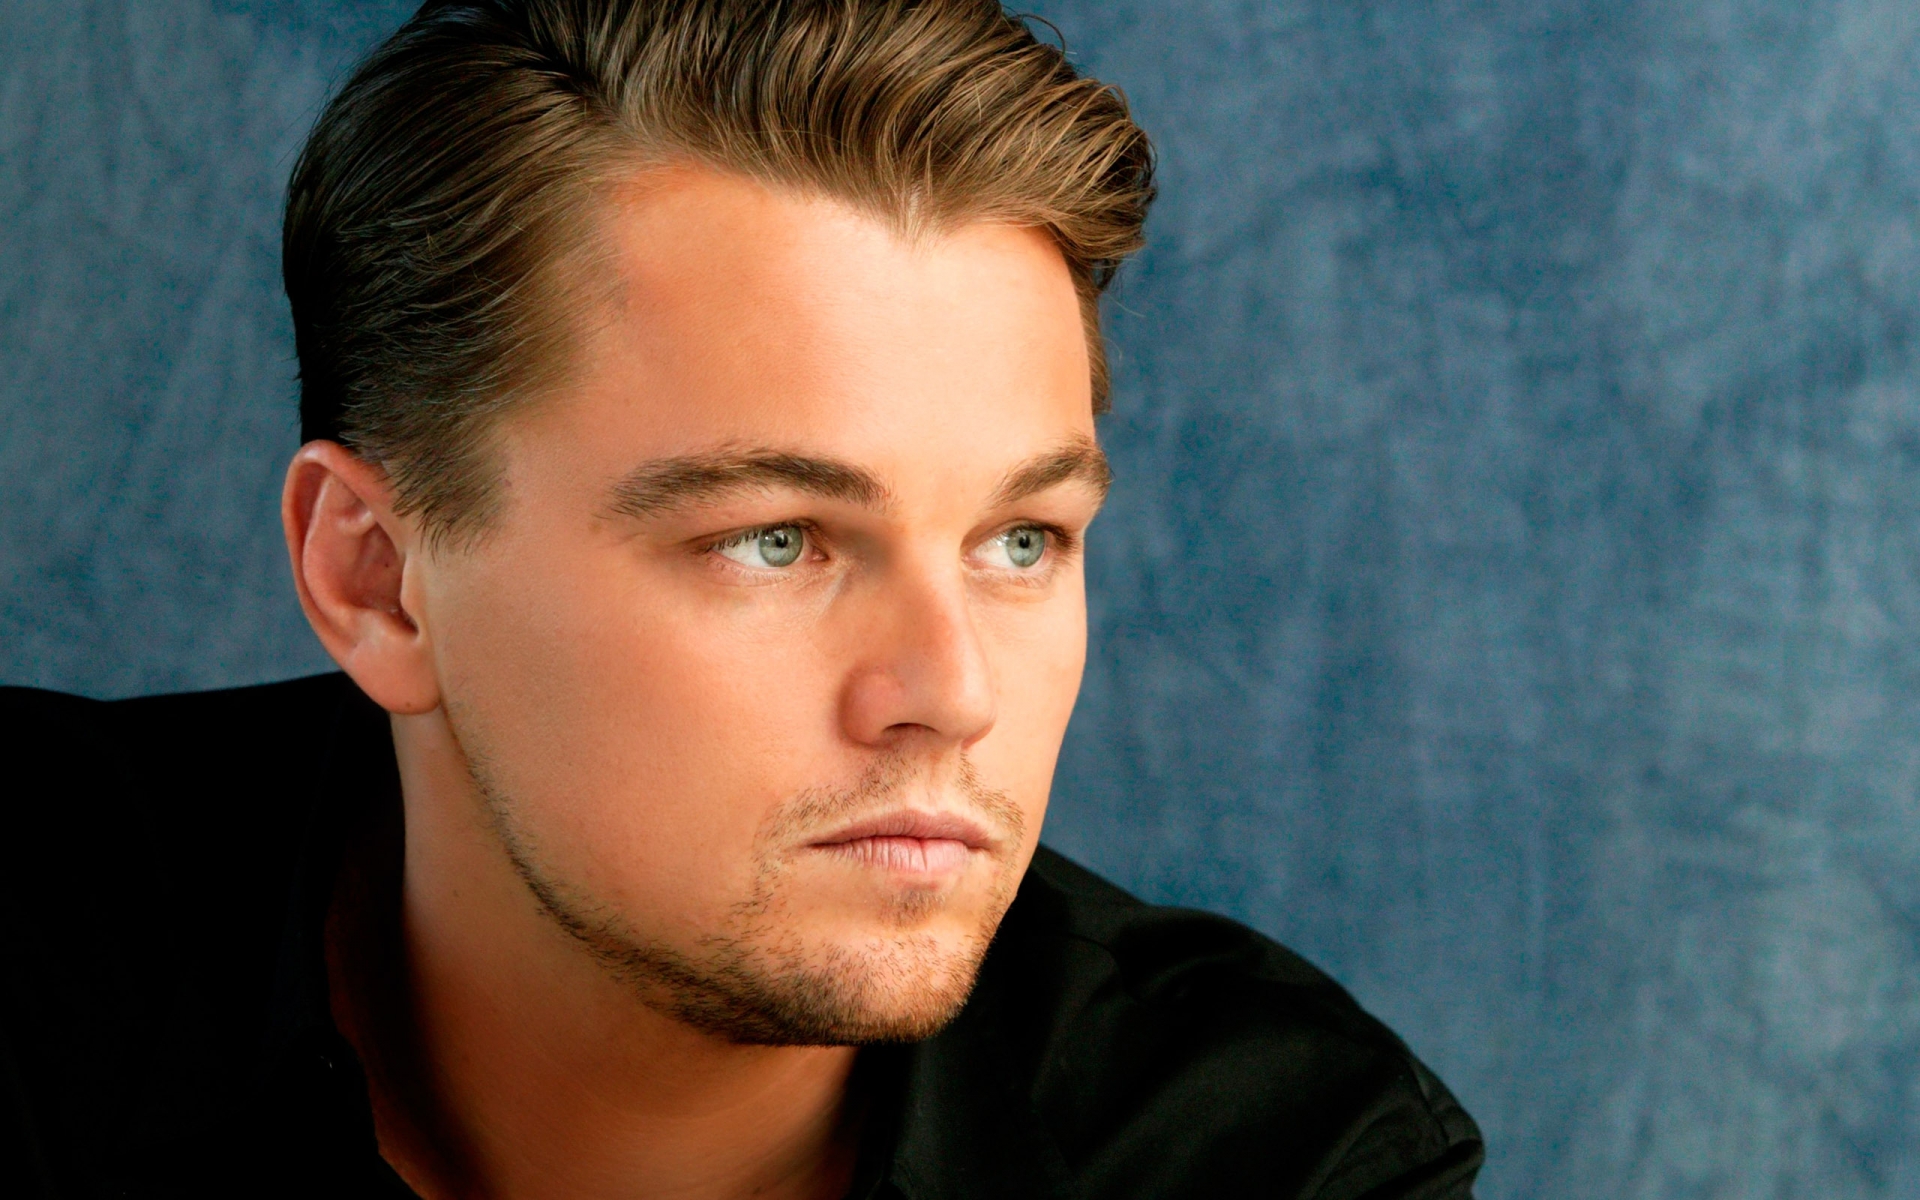 Beautiful Leonardo DiCaprio for 1920 x 1200 widescreen resolution